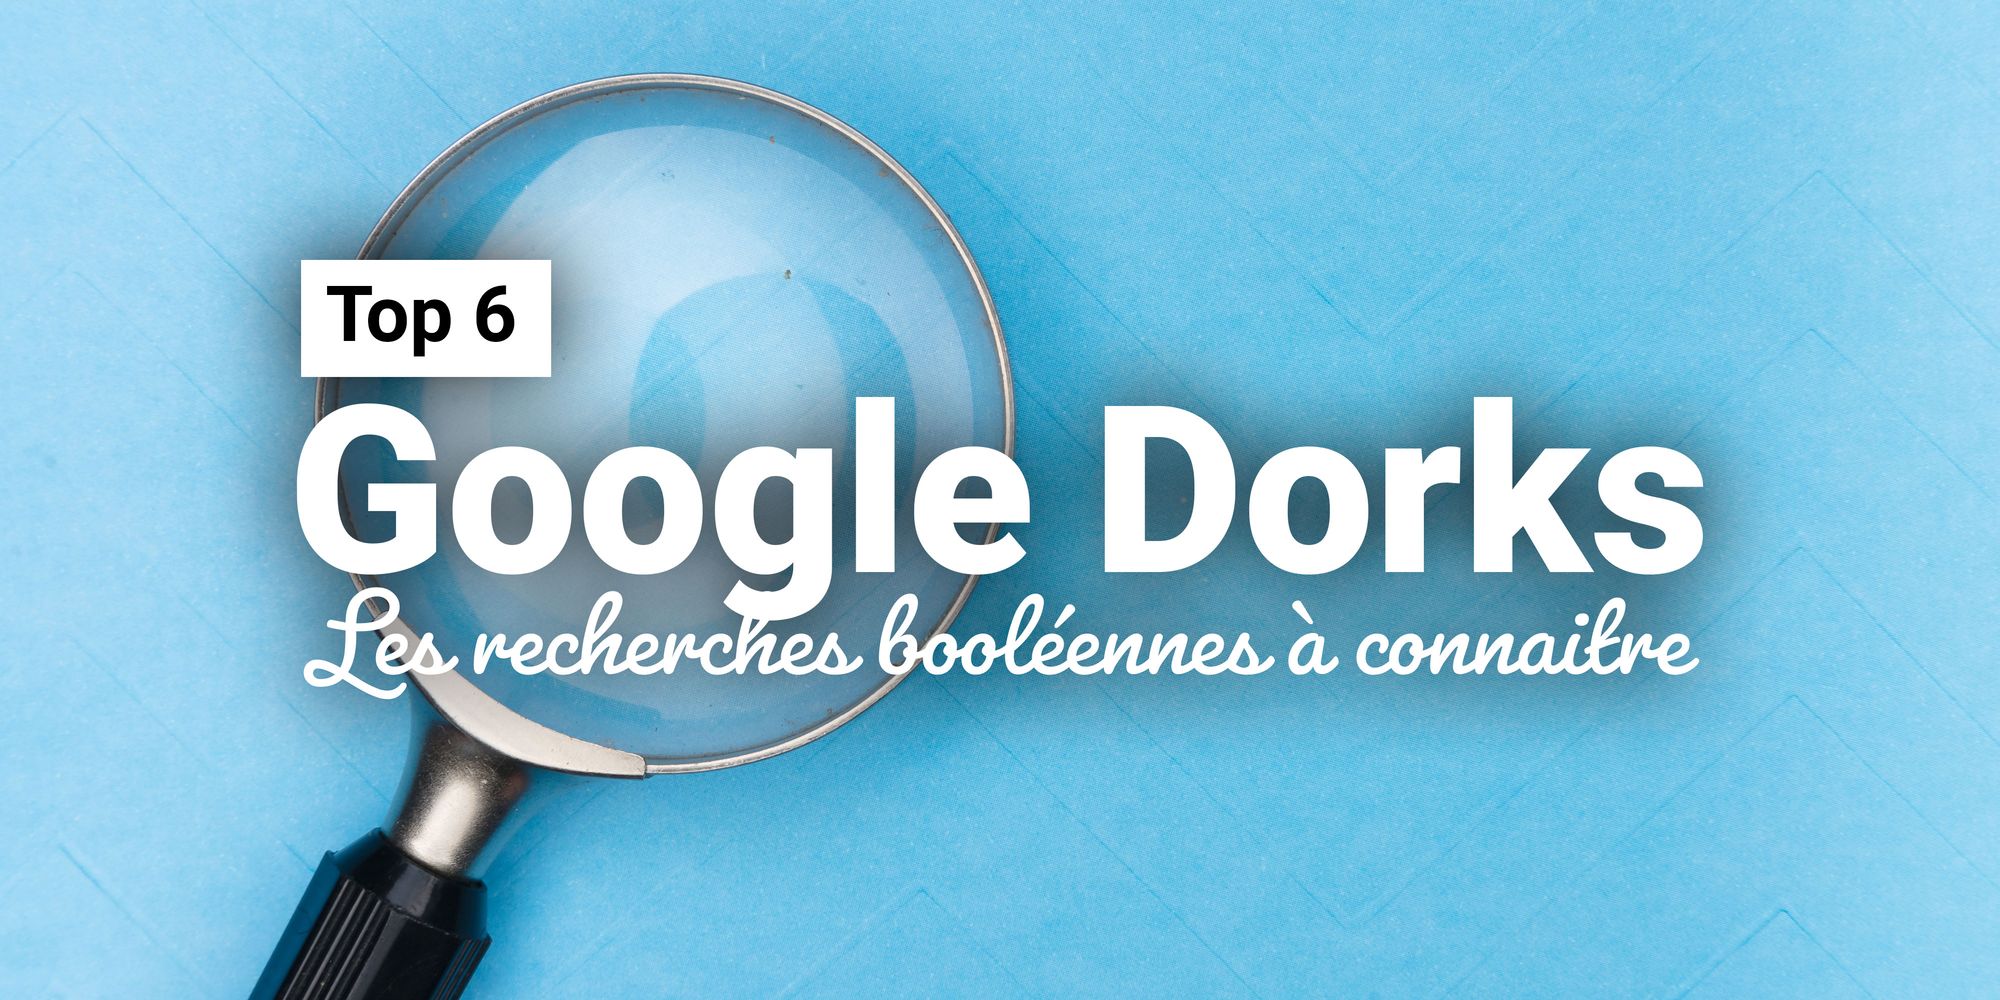 Les recherches booléennes ou les "Google Dorks" à connaitre